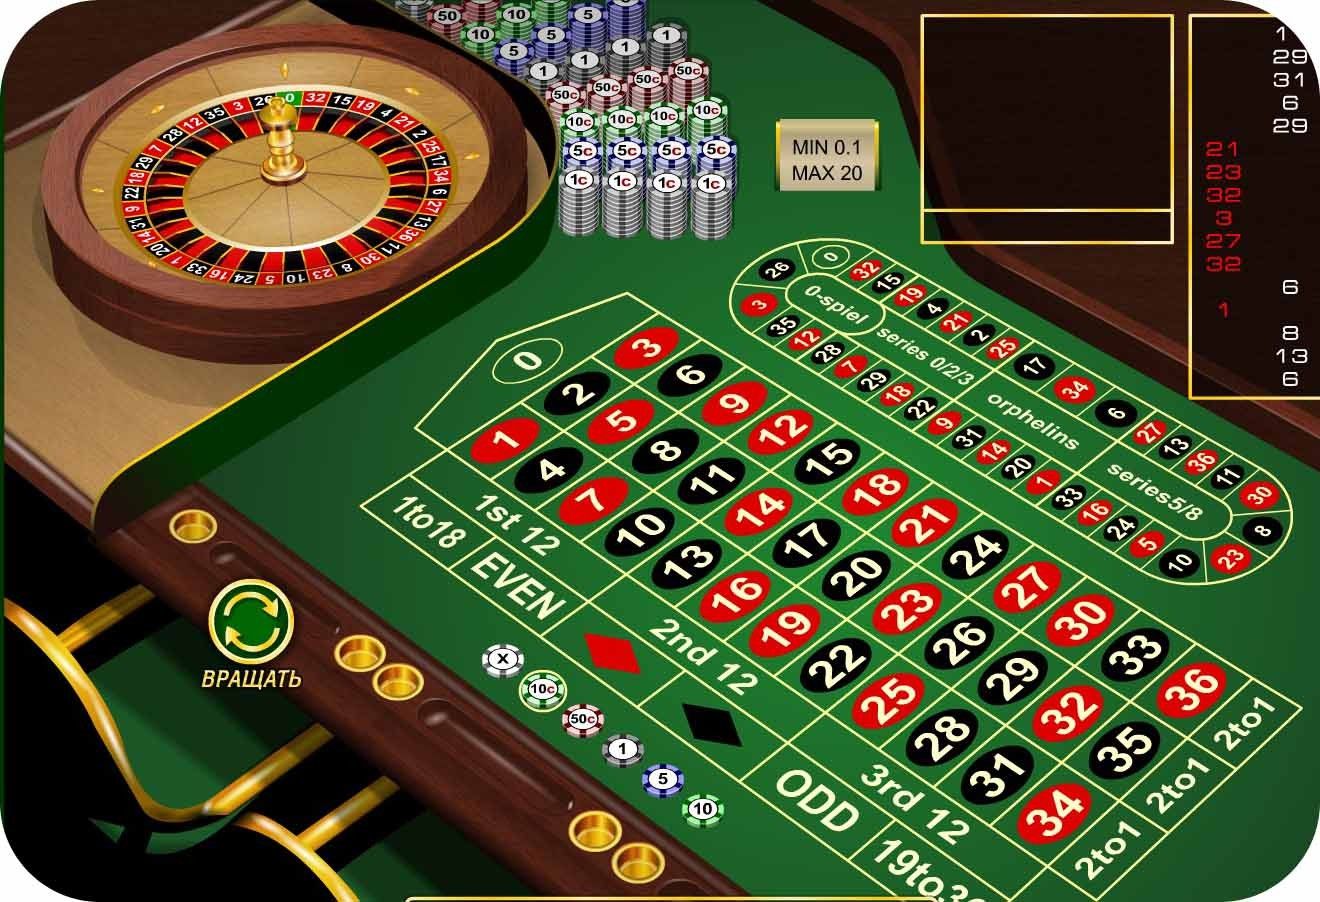 реально ли обыграть казино в рулетку в интернете